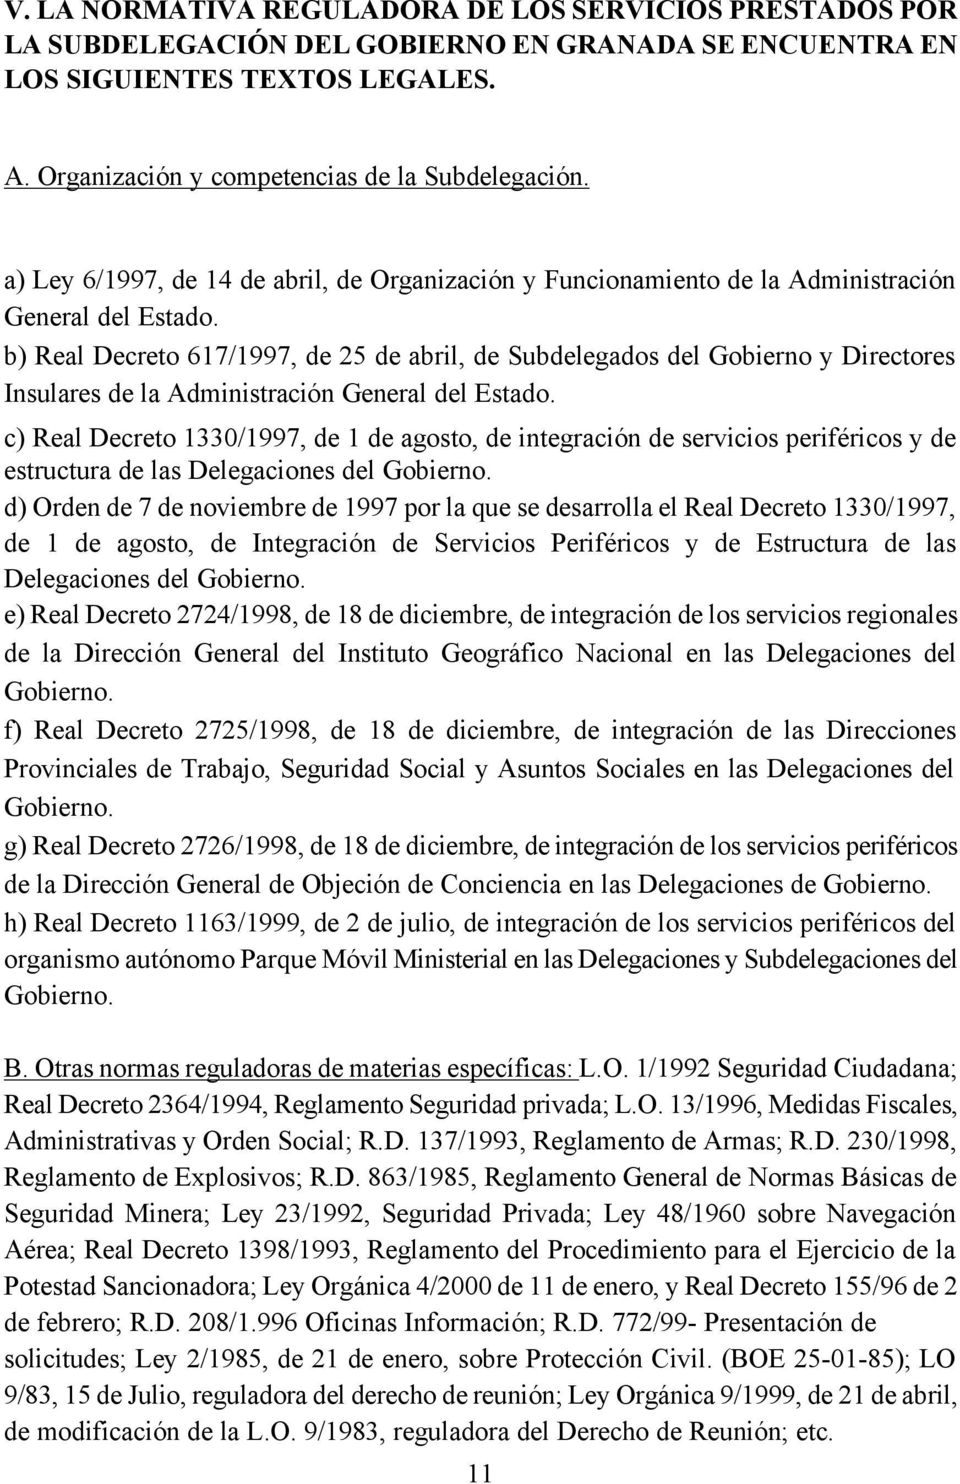 b) Real Decreto 617/1997, de 25 de abril, de Subdelegados del Gobierno y Directores Insulares de la Administración General del Estado.